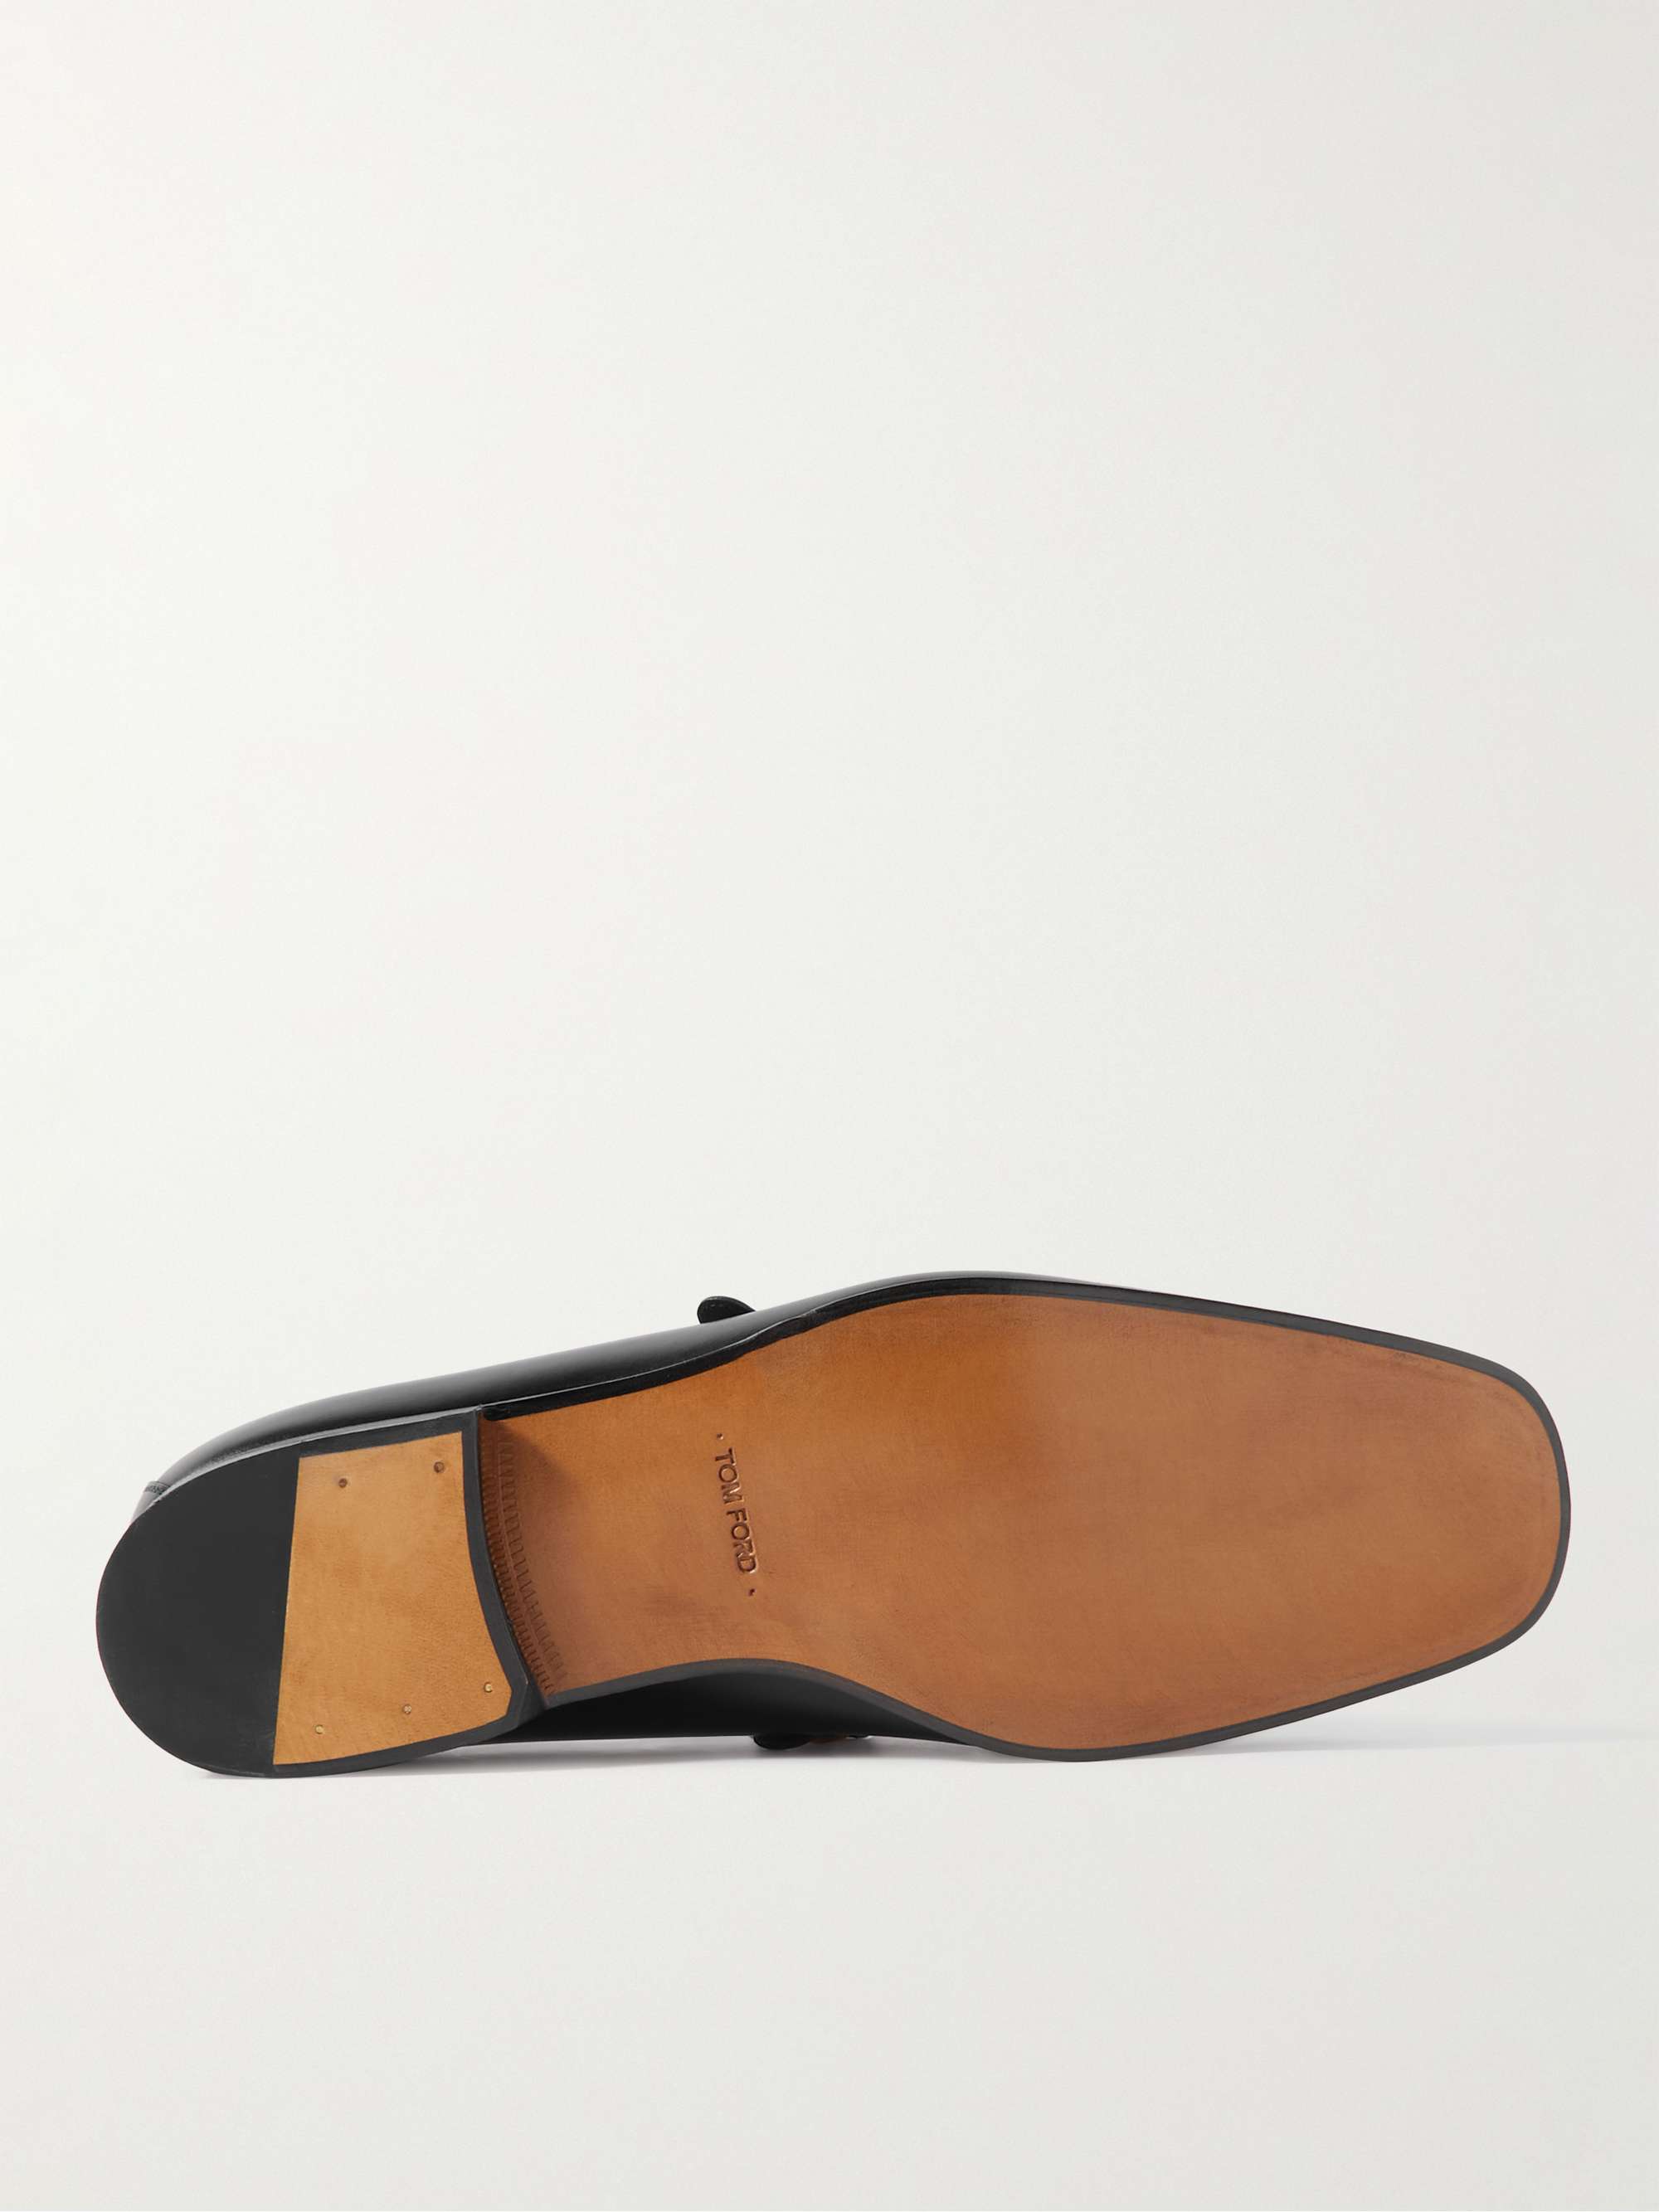 TOM FORD Jack Embellished Patent-Leather Loafers for Men | MR PORTER